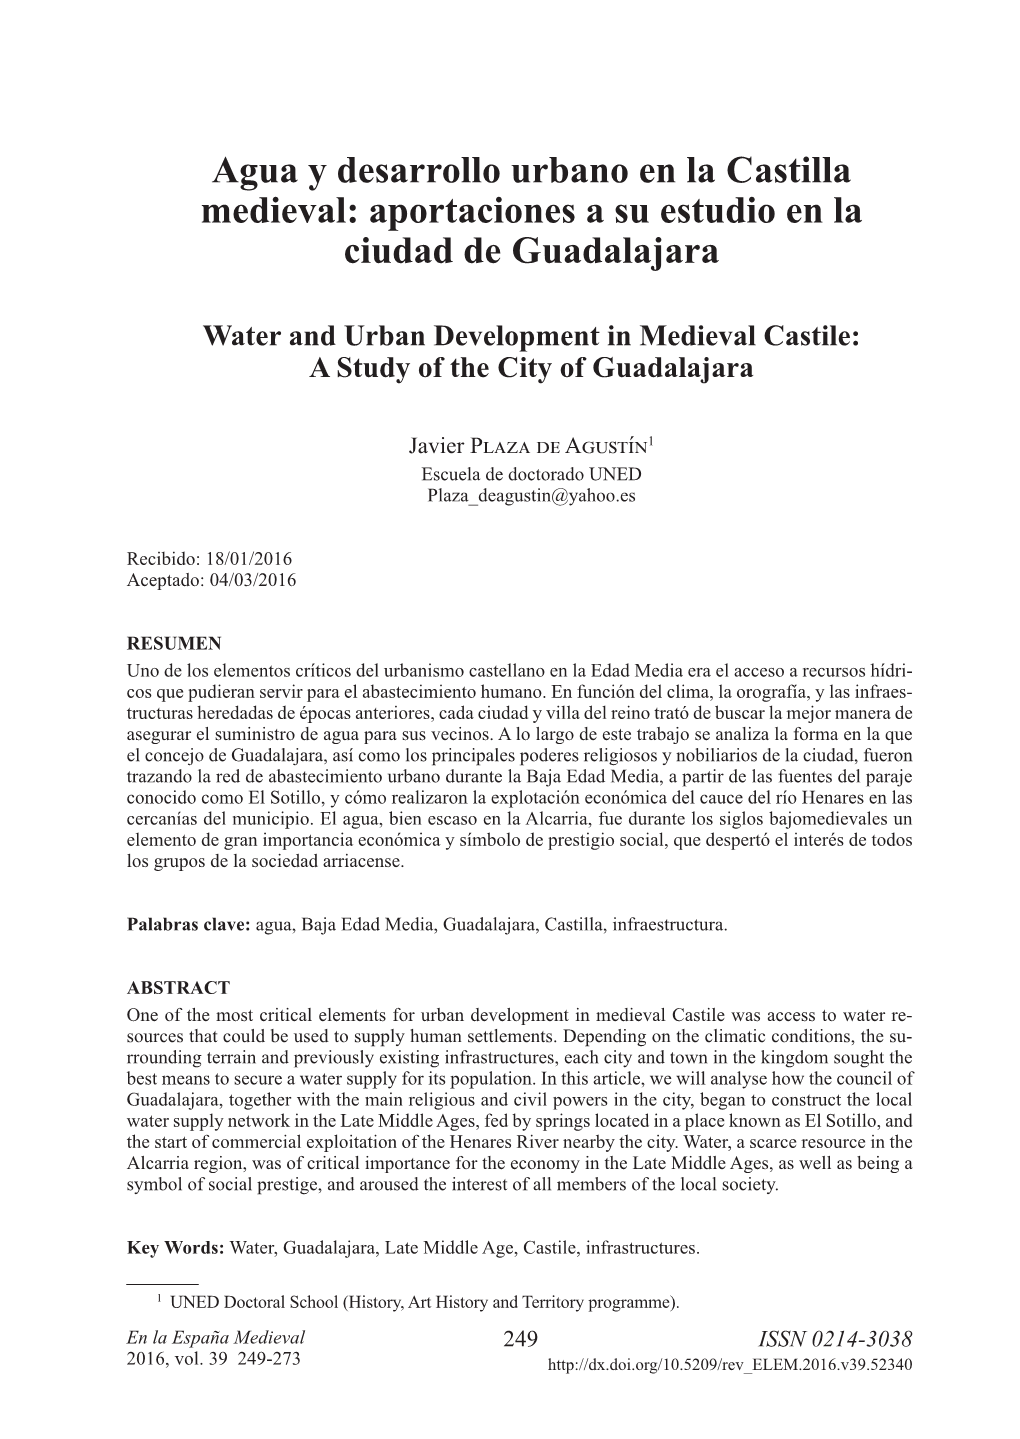 Agua Y Desarrollo Urbano En La Castilla Medieval: Aportaciones a Su Estudio En La Ciudad De Guadalajara